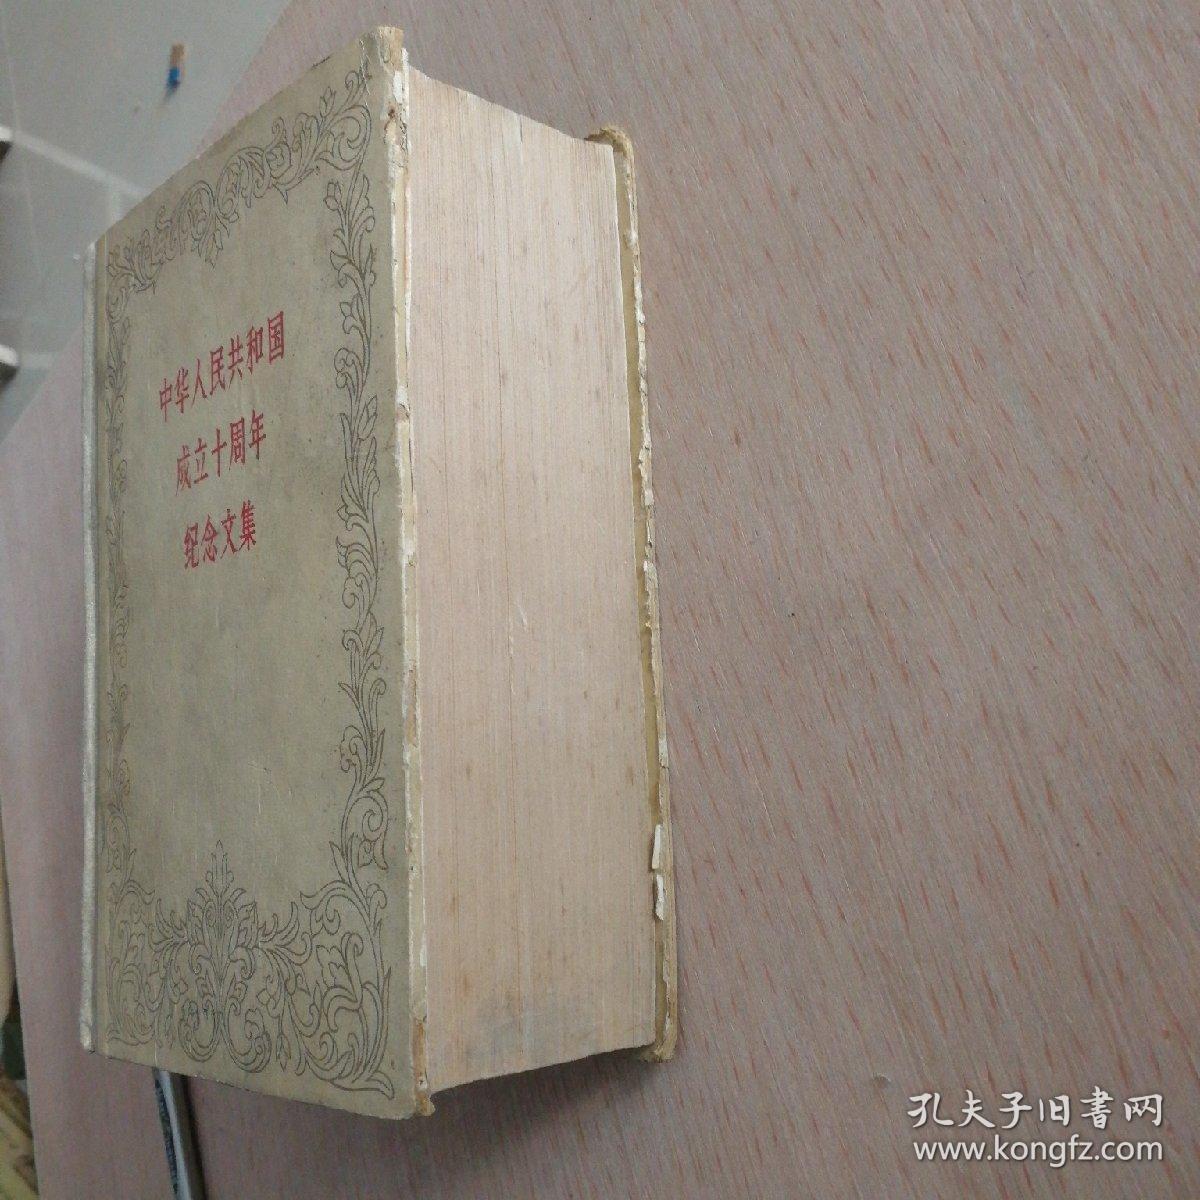 《中华人民共和国成立十周年纪念文集》馆藏书（人民出版社启事一份随书附送）